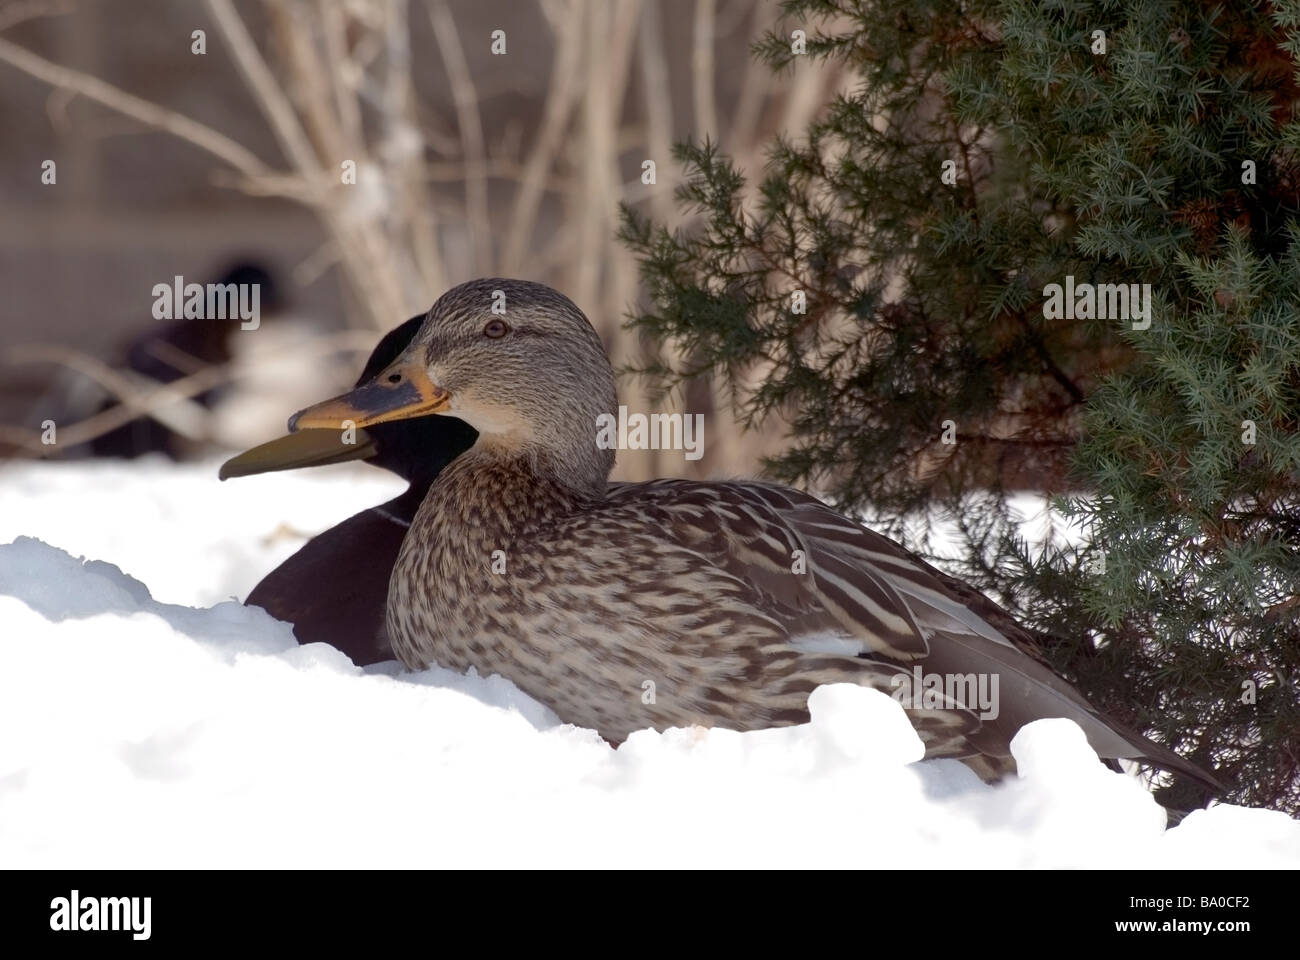 Mallard Duck Pair in snow Stock Photo